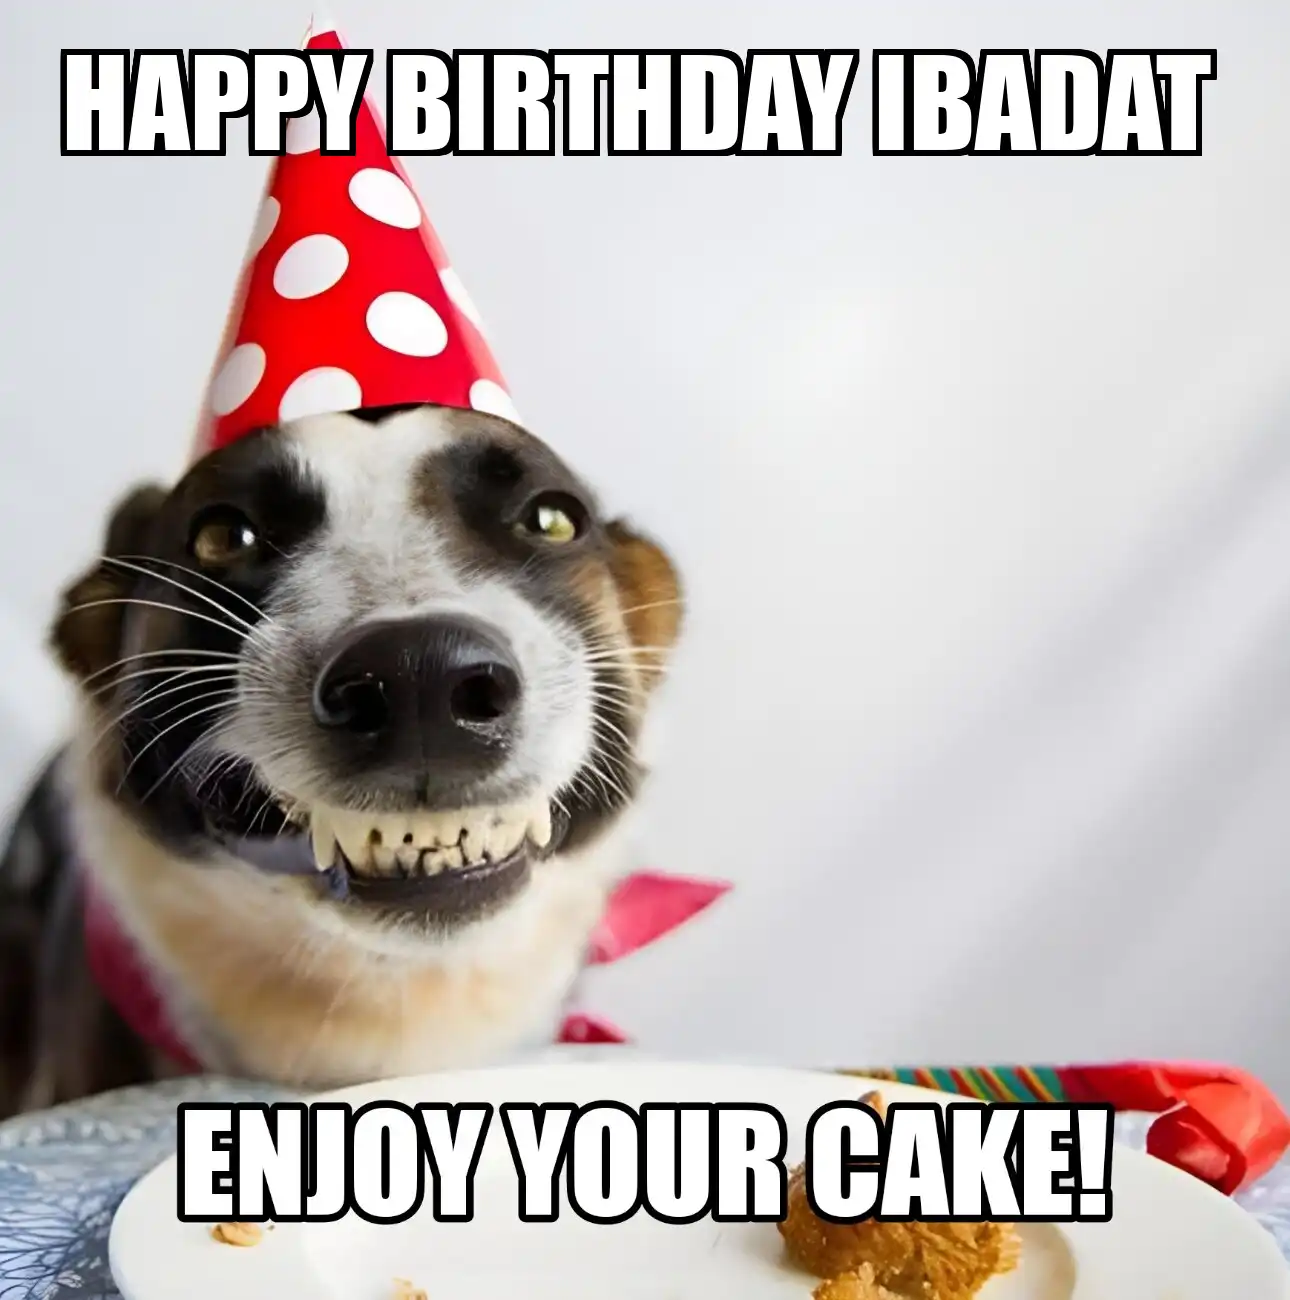 Happy Birthday Ibadat Enjoy Your Cake Dog Meme